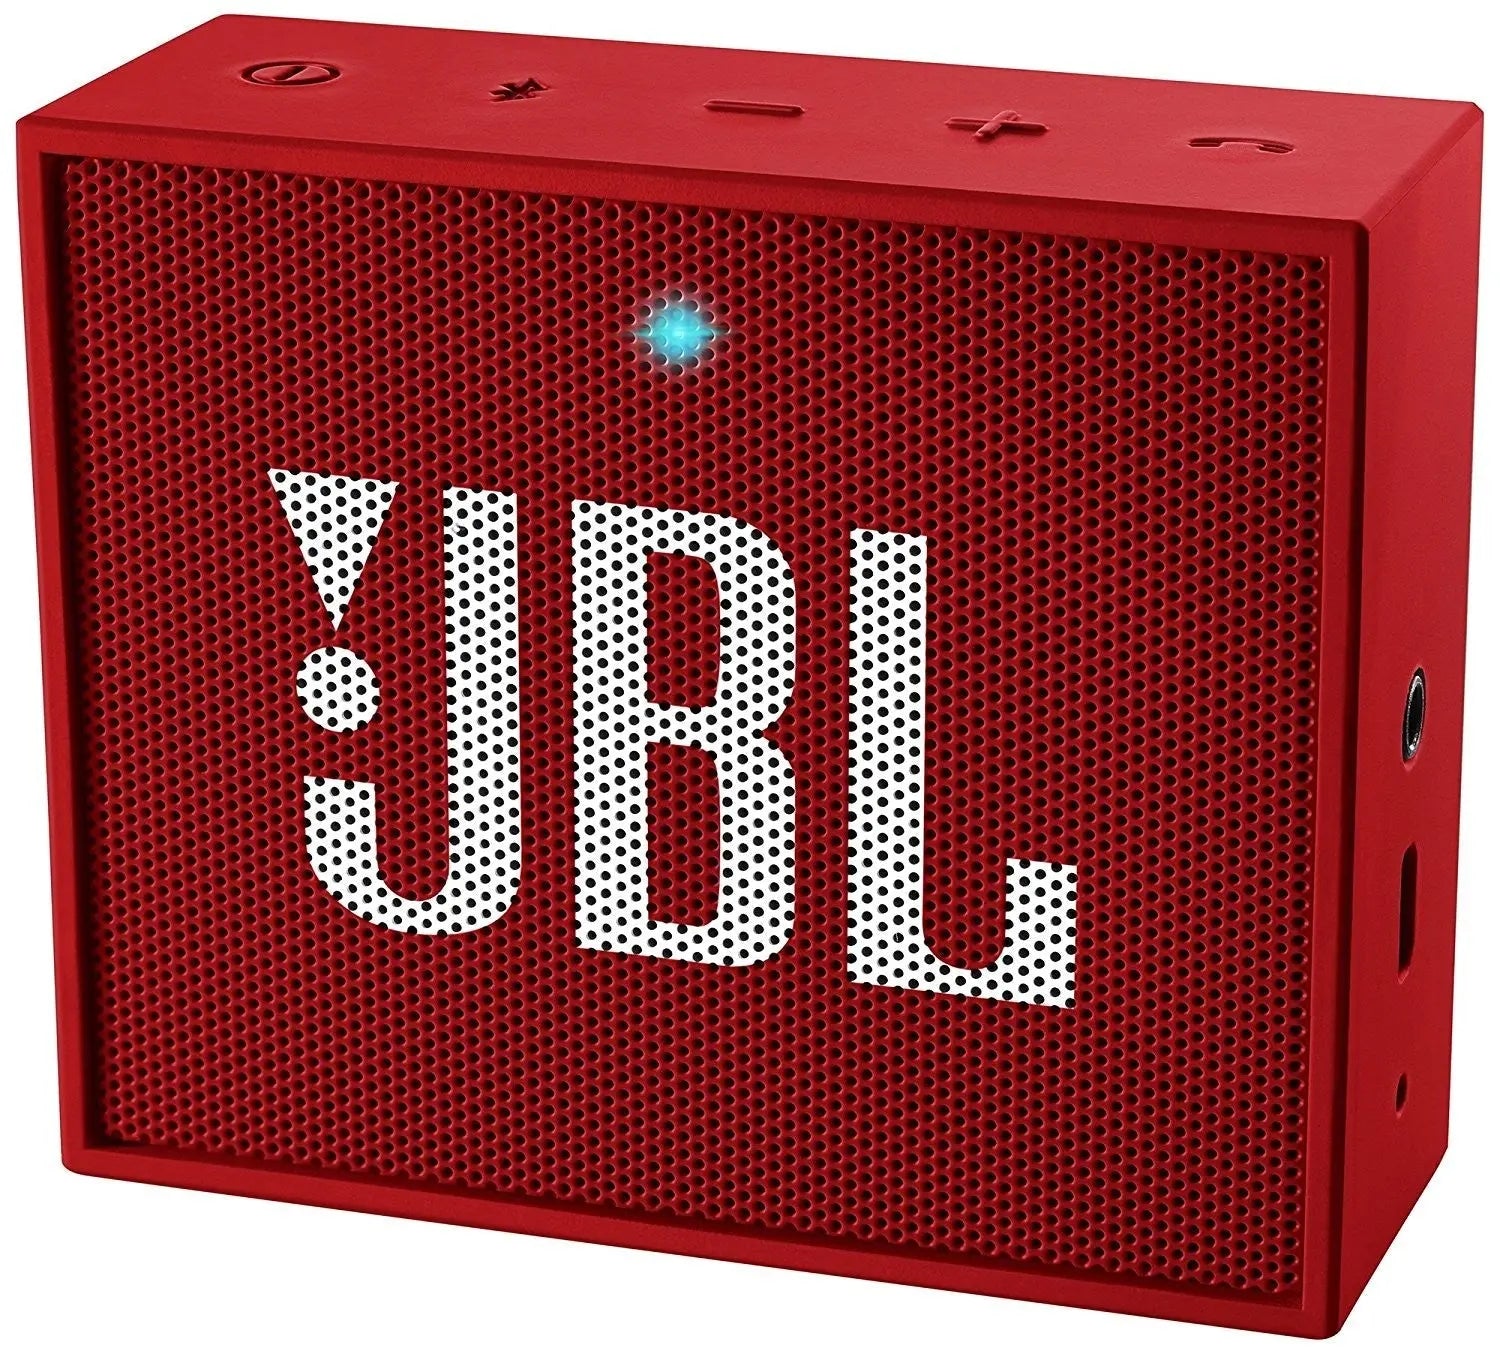 Enceinte Bluetooth JBL Go ROUGE comptact sans fil